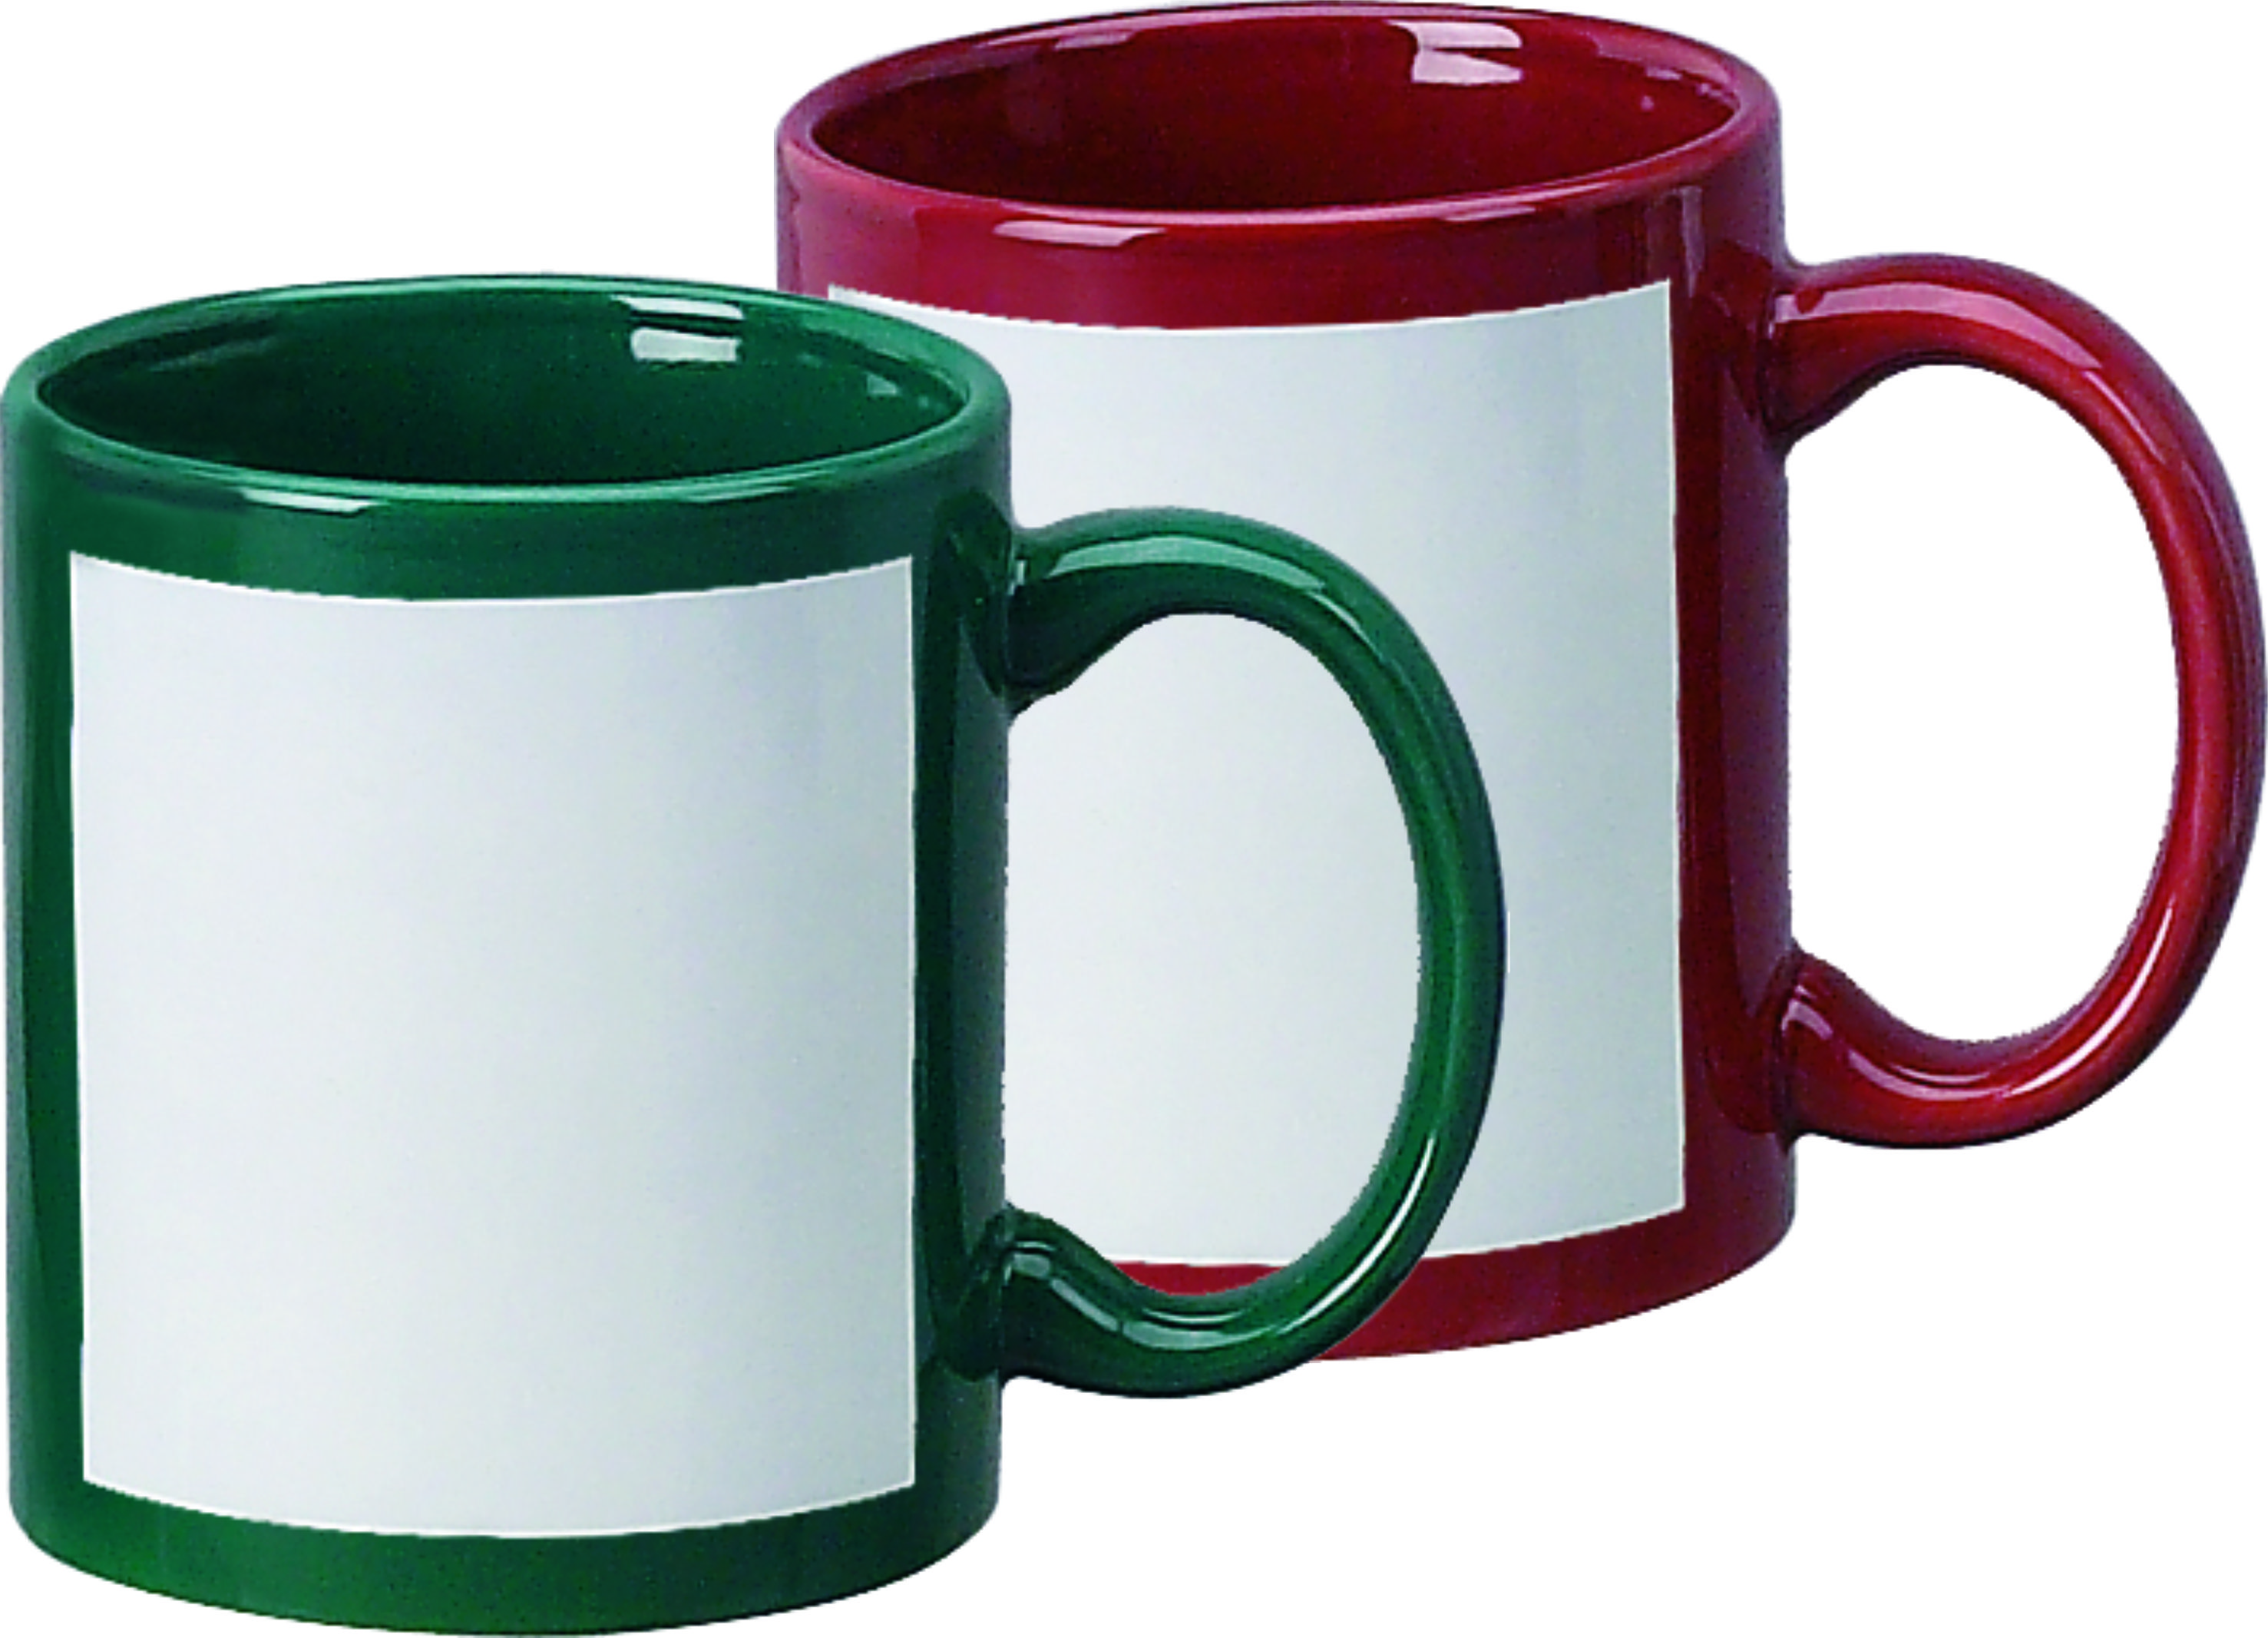 Blank Mugs Sublimation, Mug Press Sublimation, Sublimation Mugs 11oz